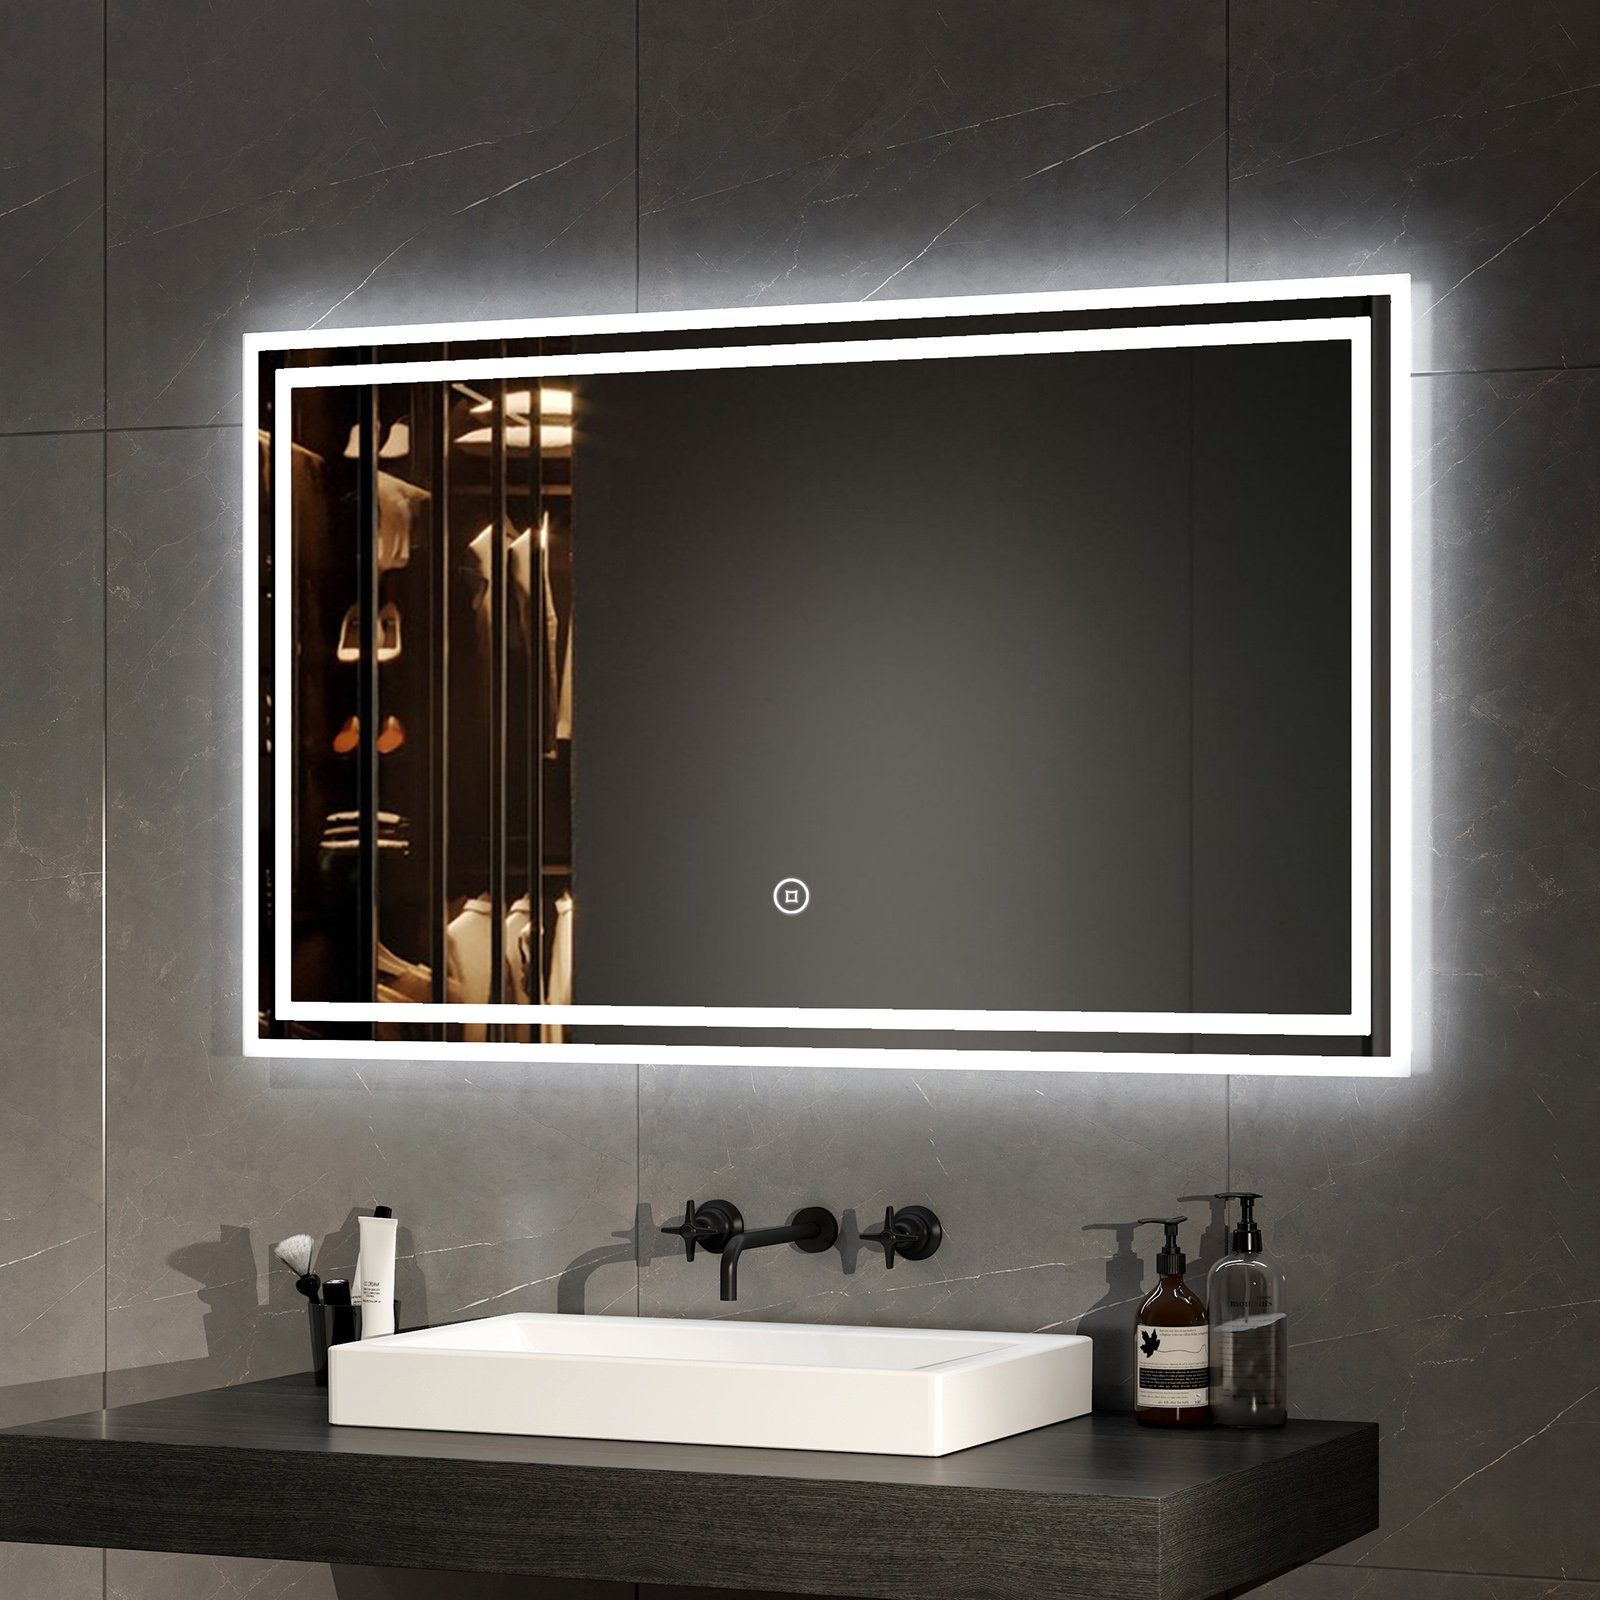 Beleuchtung Energiesparend Install mit Badspiegel Badezimmerspiegel Einfach Lichtfarben Wandspiegel Explosionsschutz EMKE Badezimmerspiegel, 3 LED